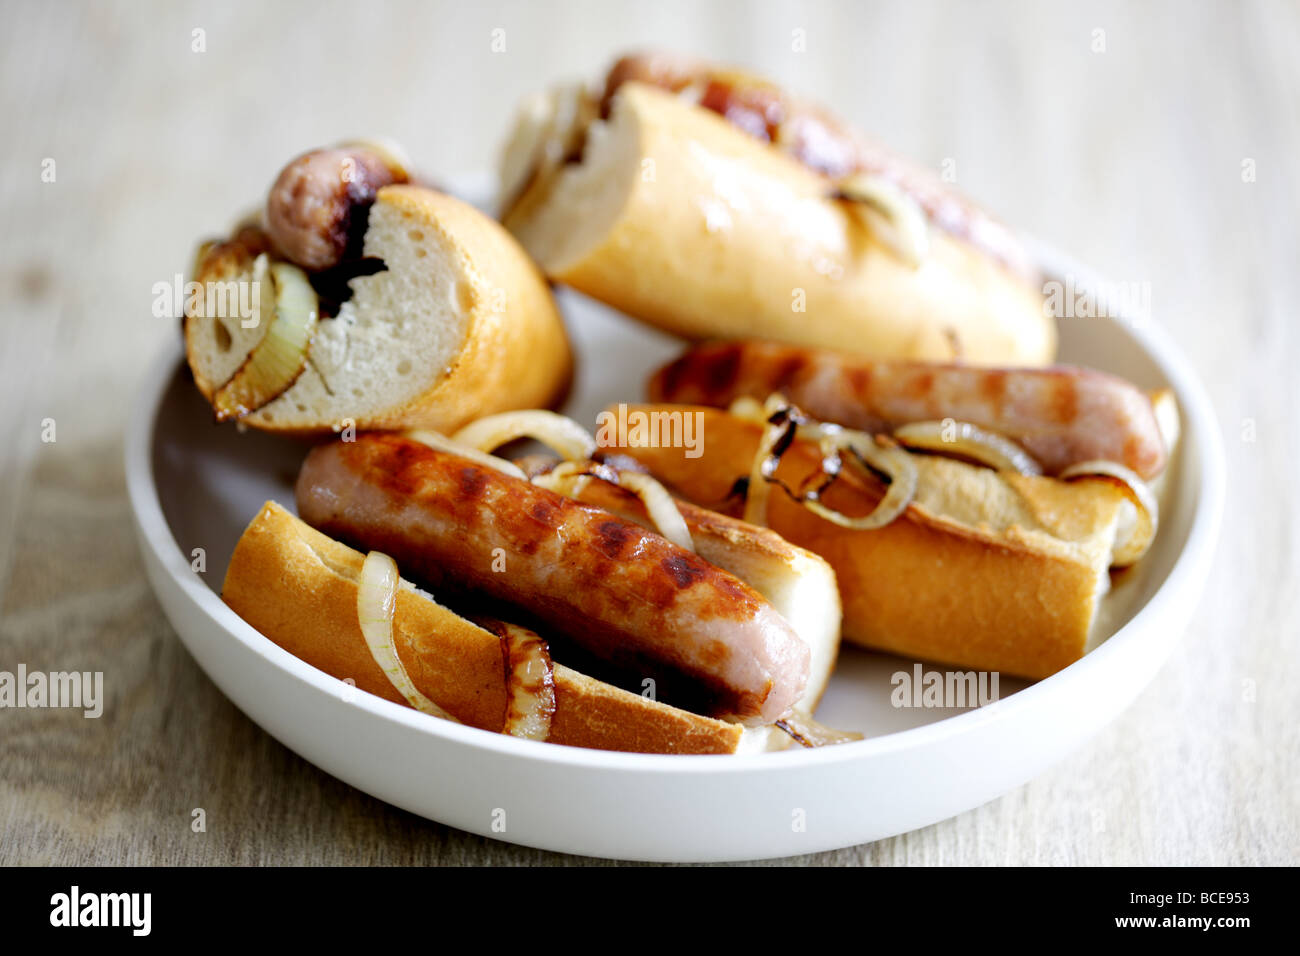 Frisch gekochte Wurst aus Schweinefleisch Hot Dogs mit Zwiebeln in einem weißen Brot Crusty Roll serviert in einer Schüssel mit Keine Personen Stockfoto